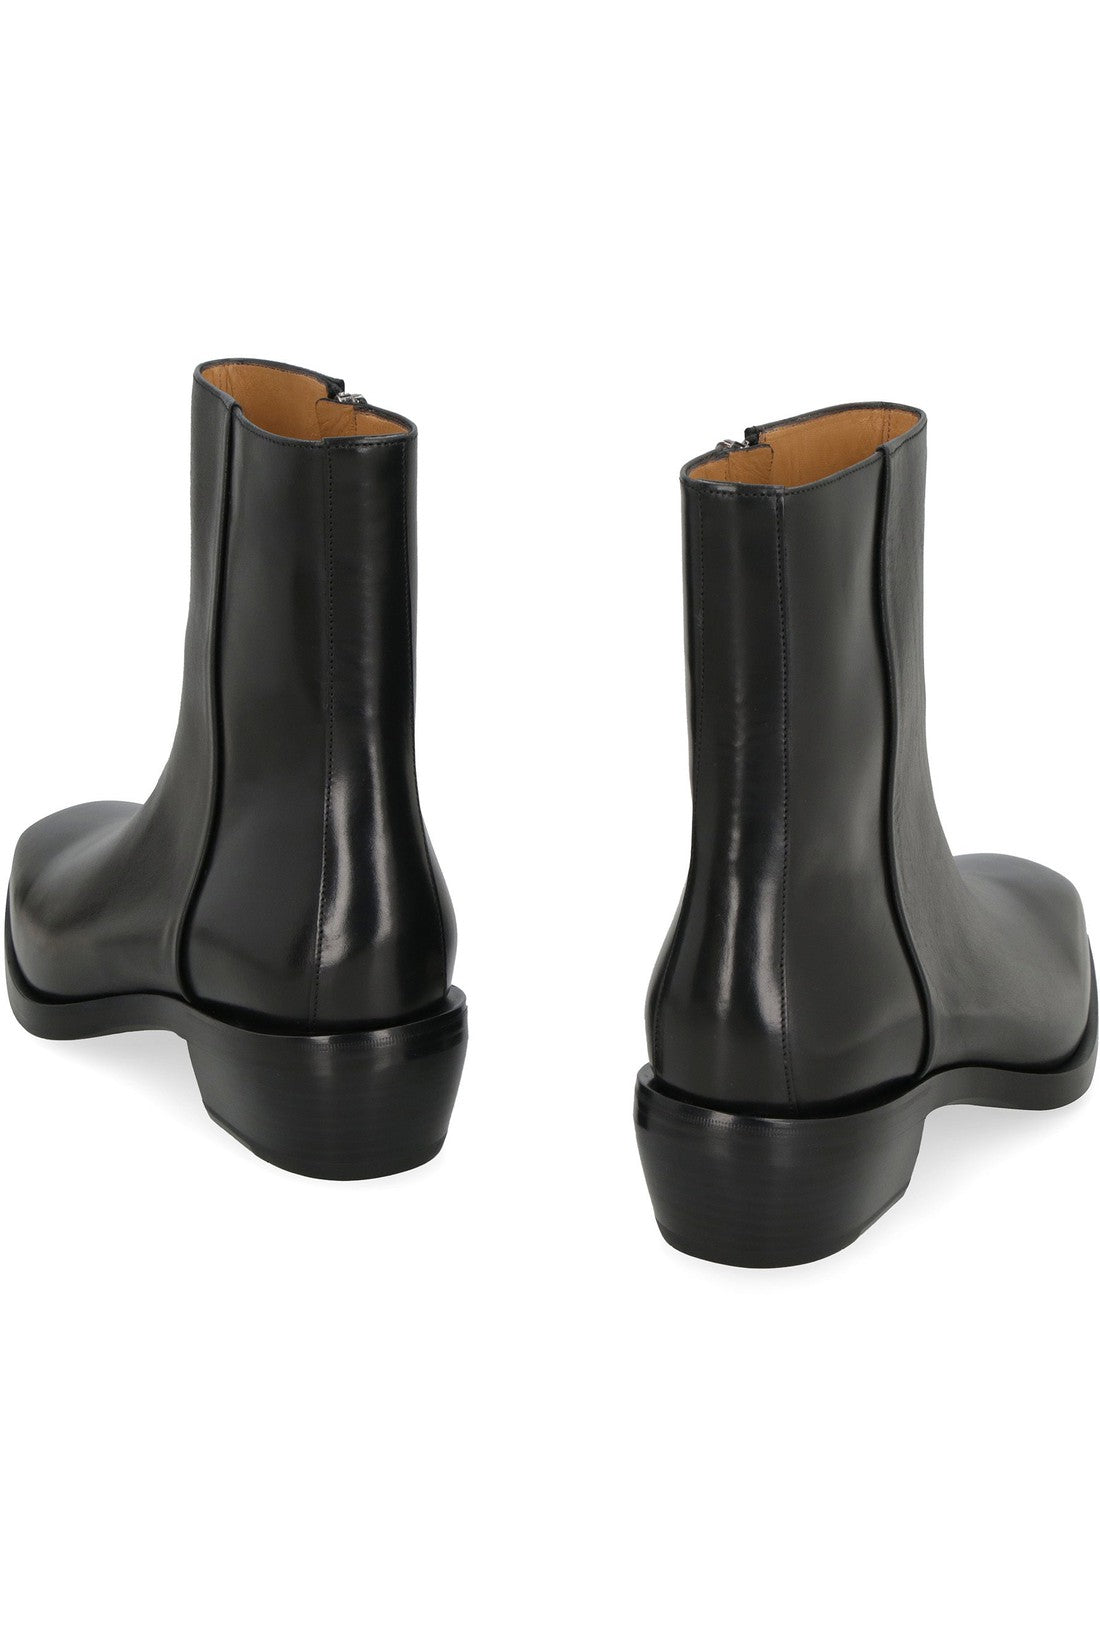 FERRAGAMO-OUTLET-SALE-Leather ankle boots-ARCHIVIST